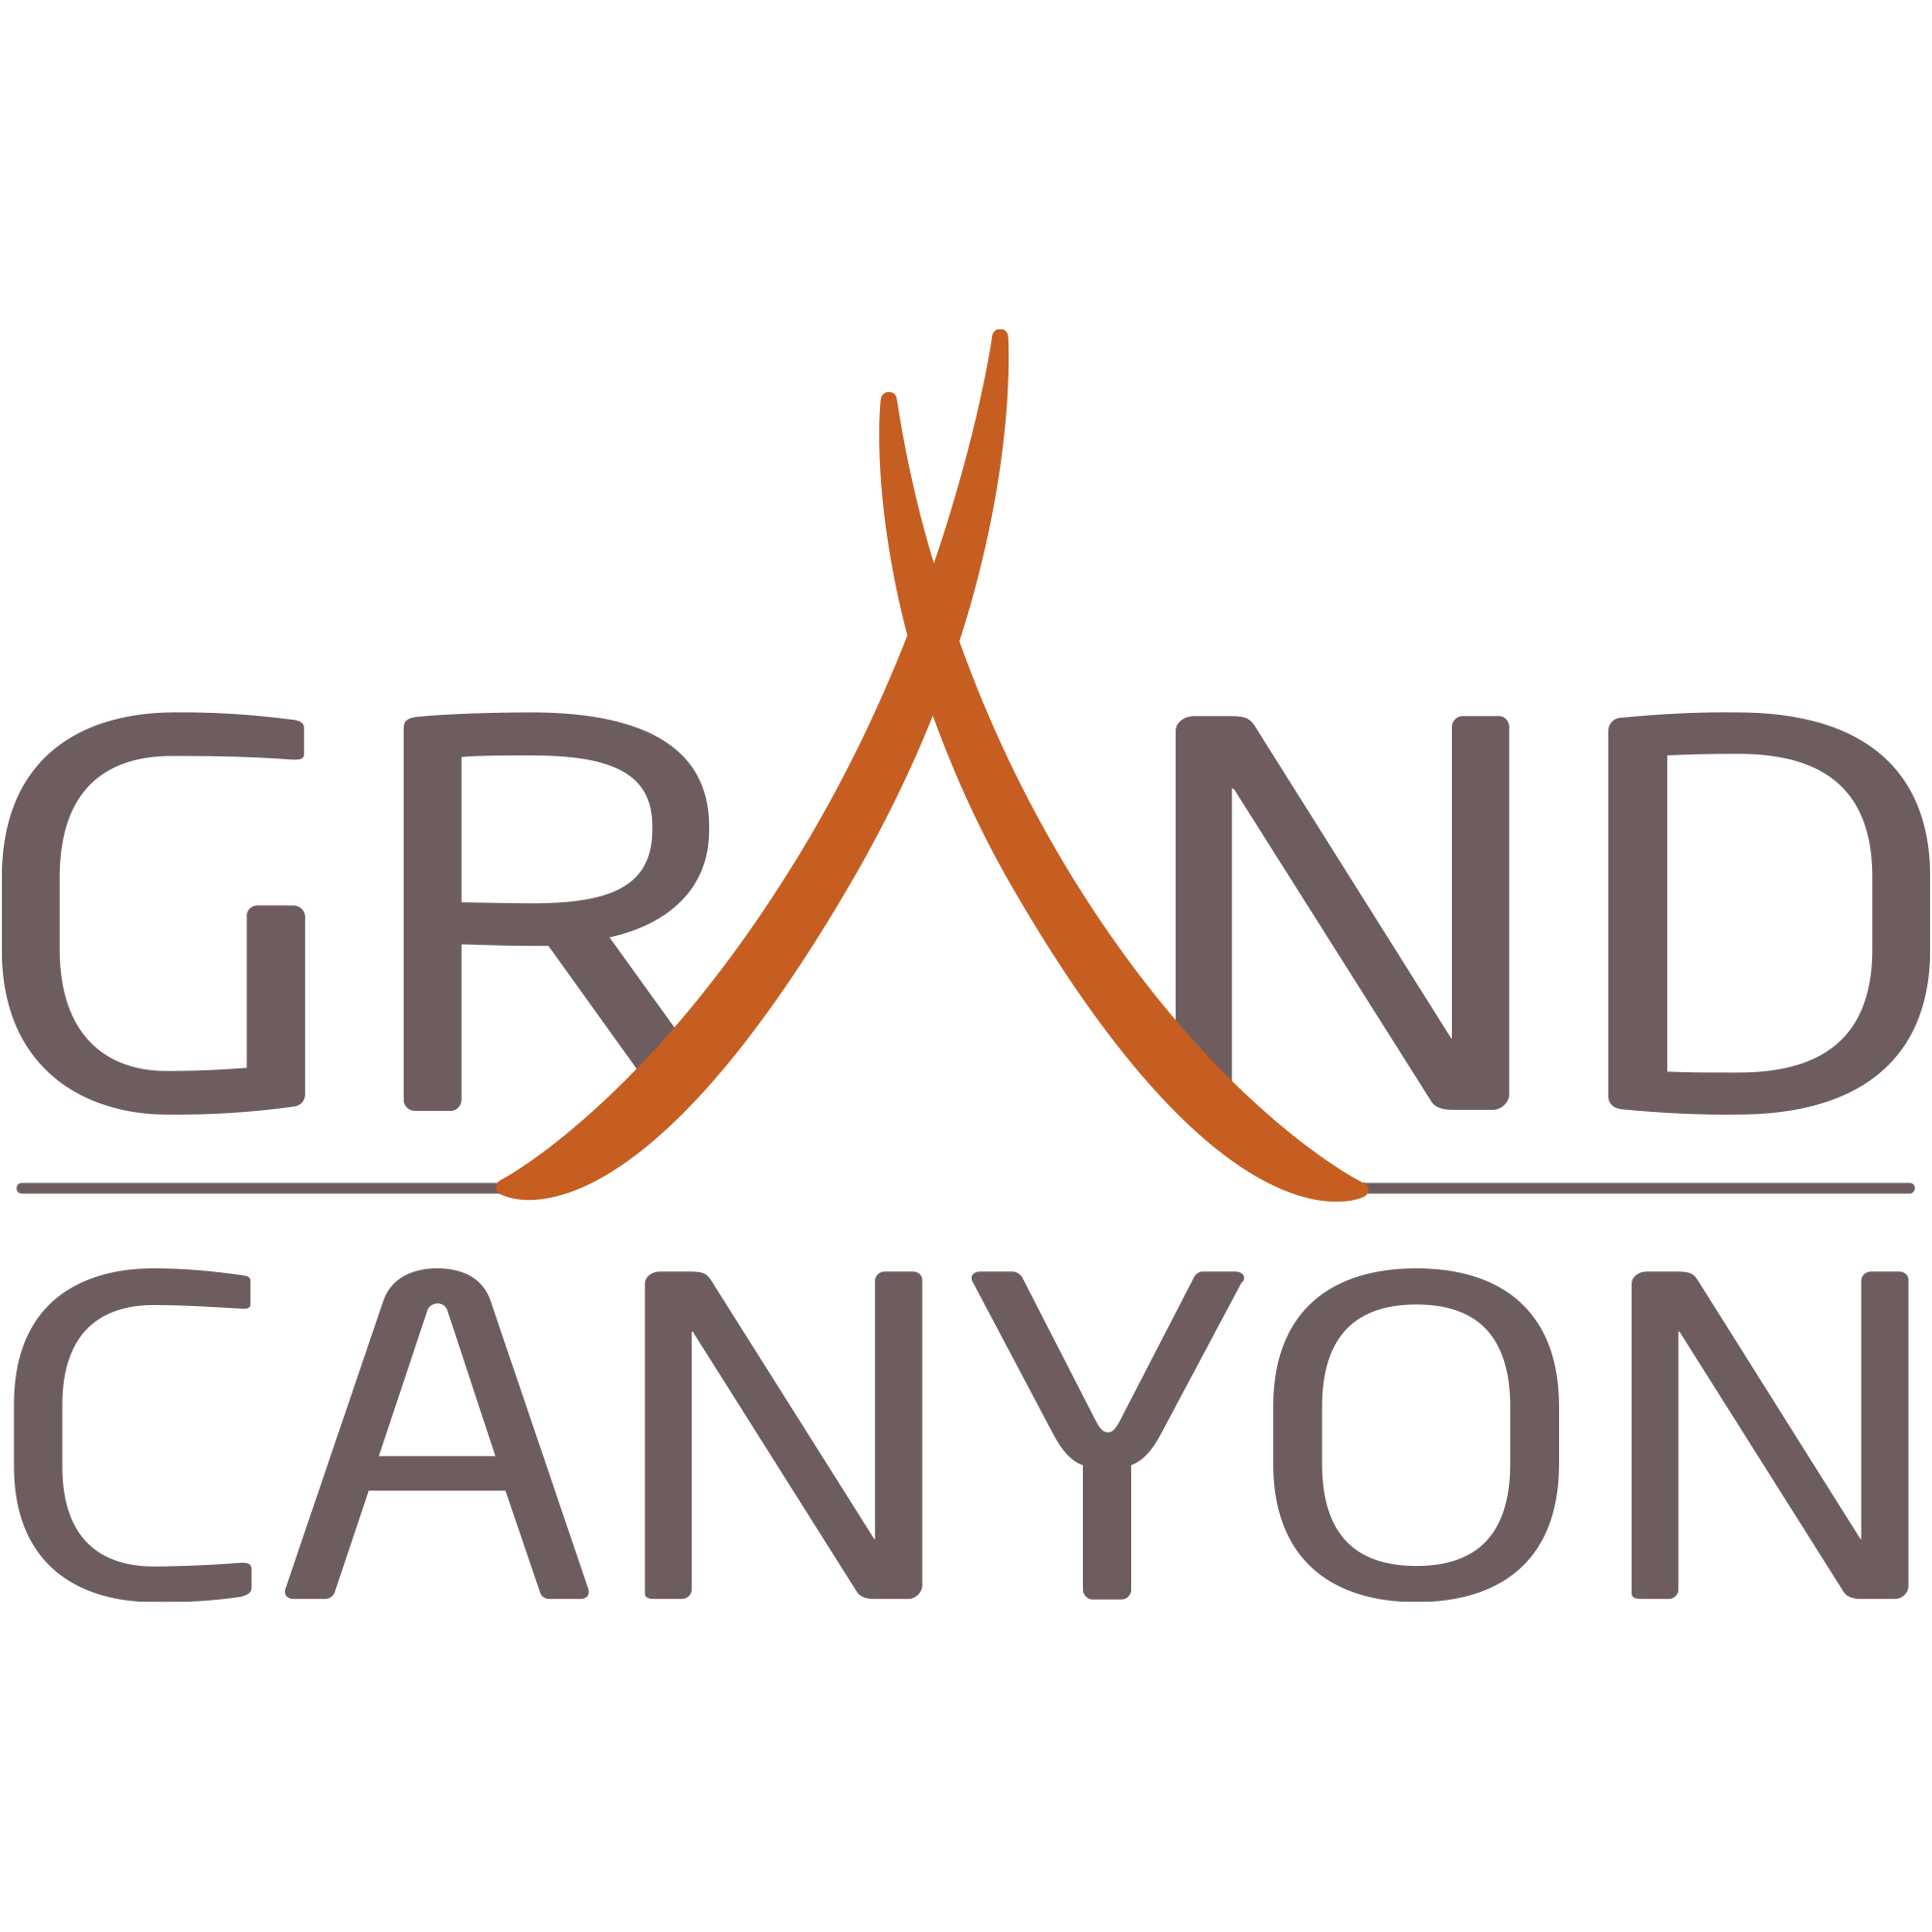 Weitere Artikel von Grand Canyon